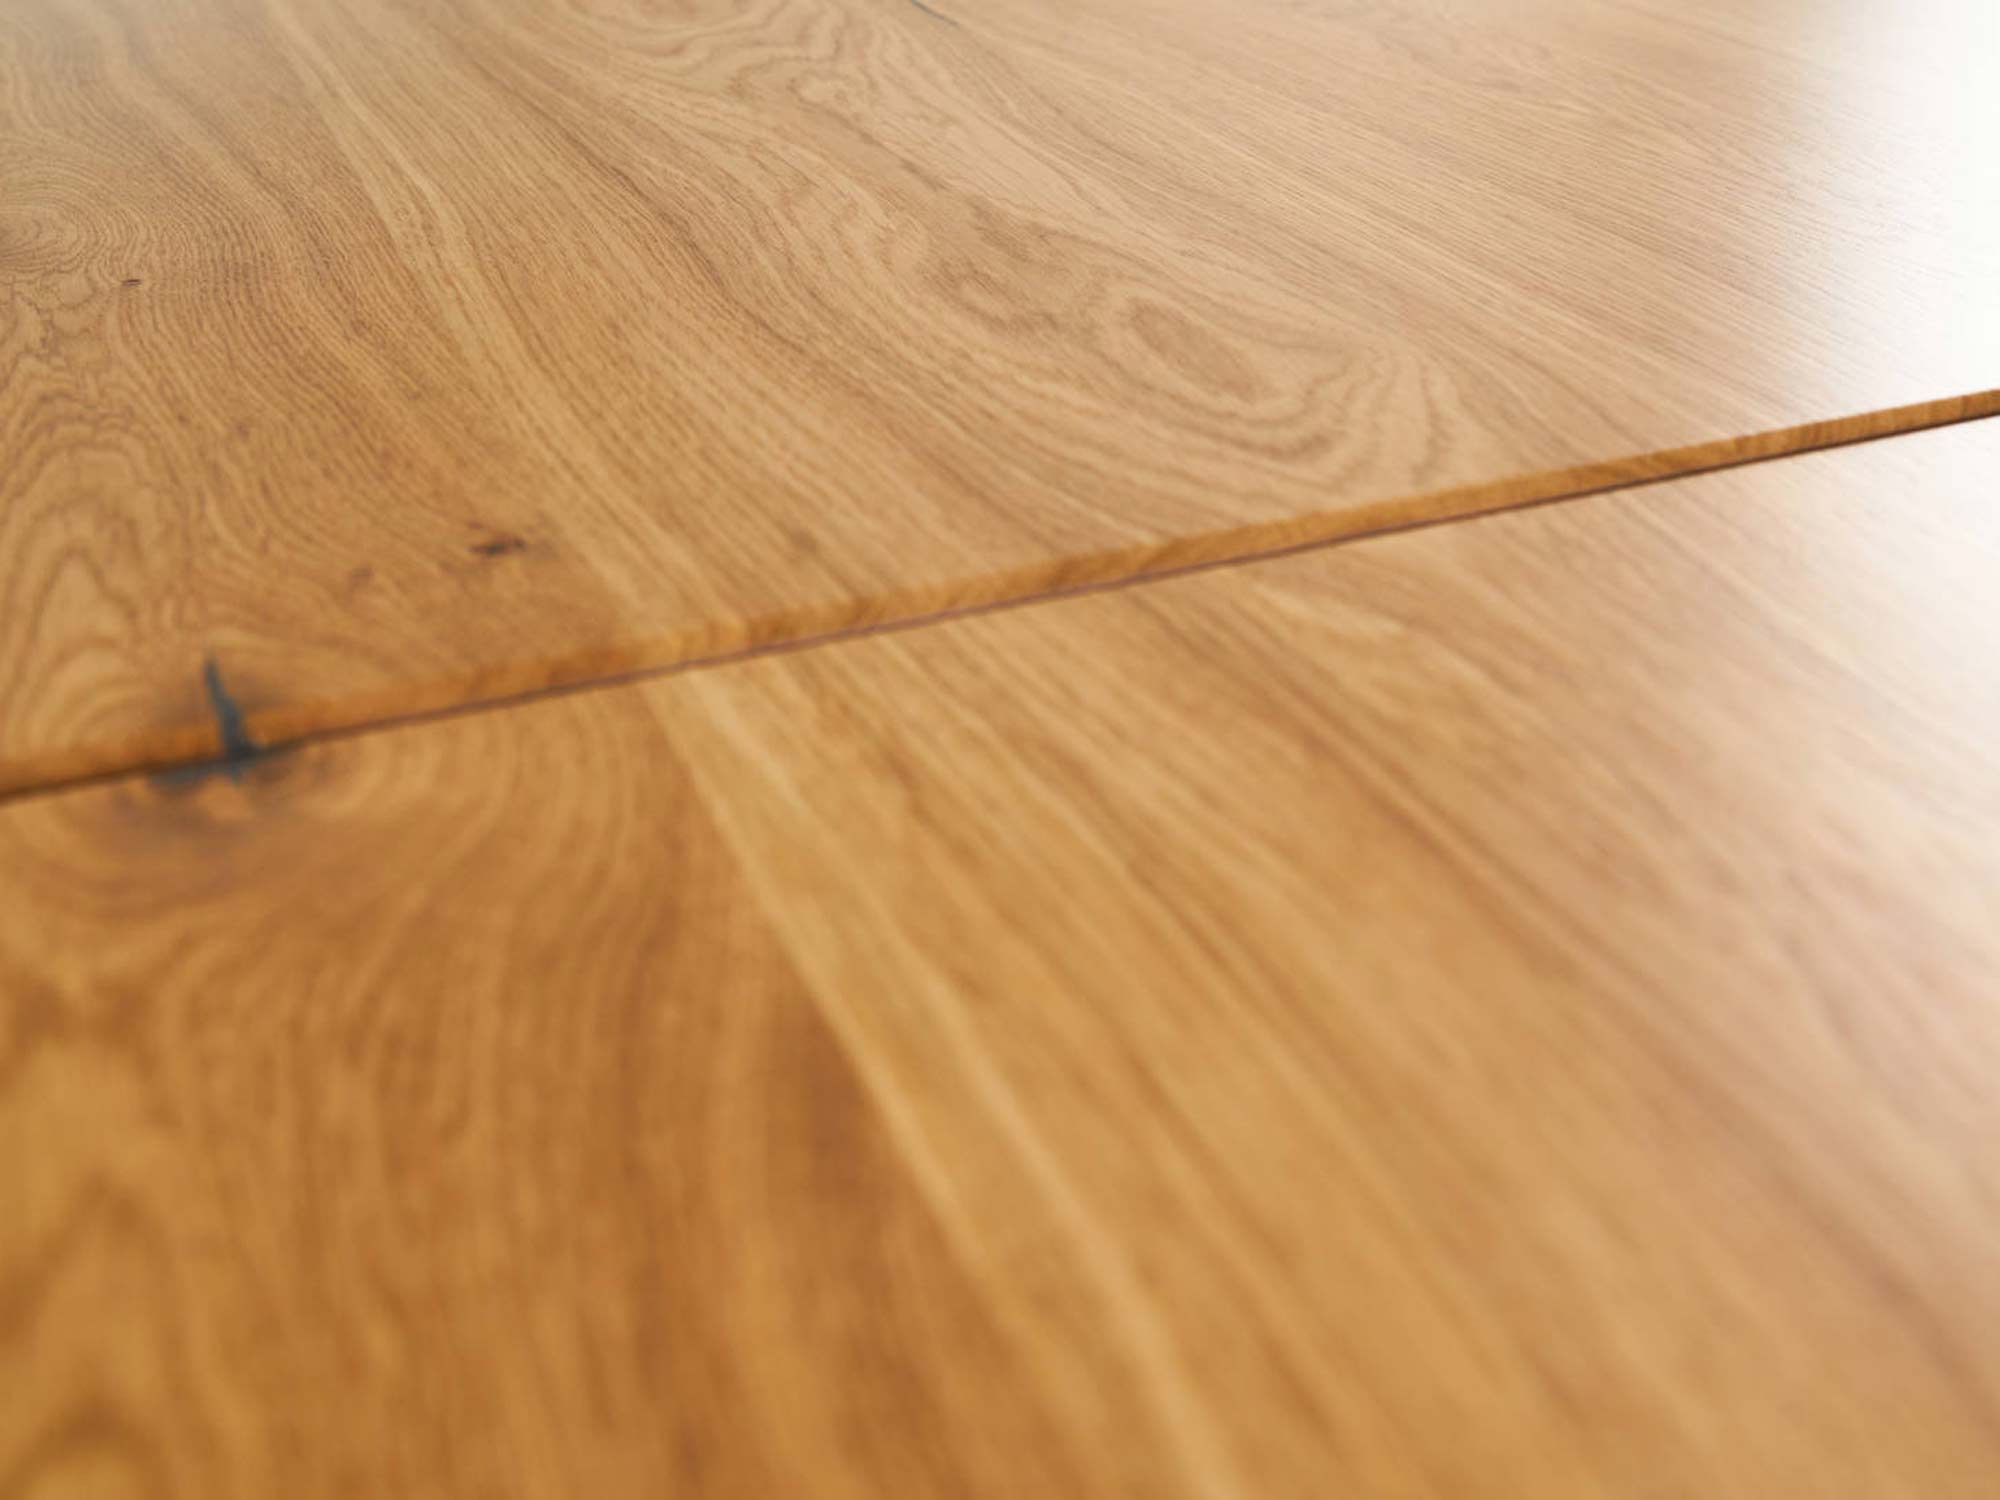 Stół drewniany industrialny rozkładany HELIOS